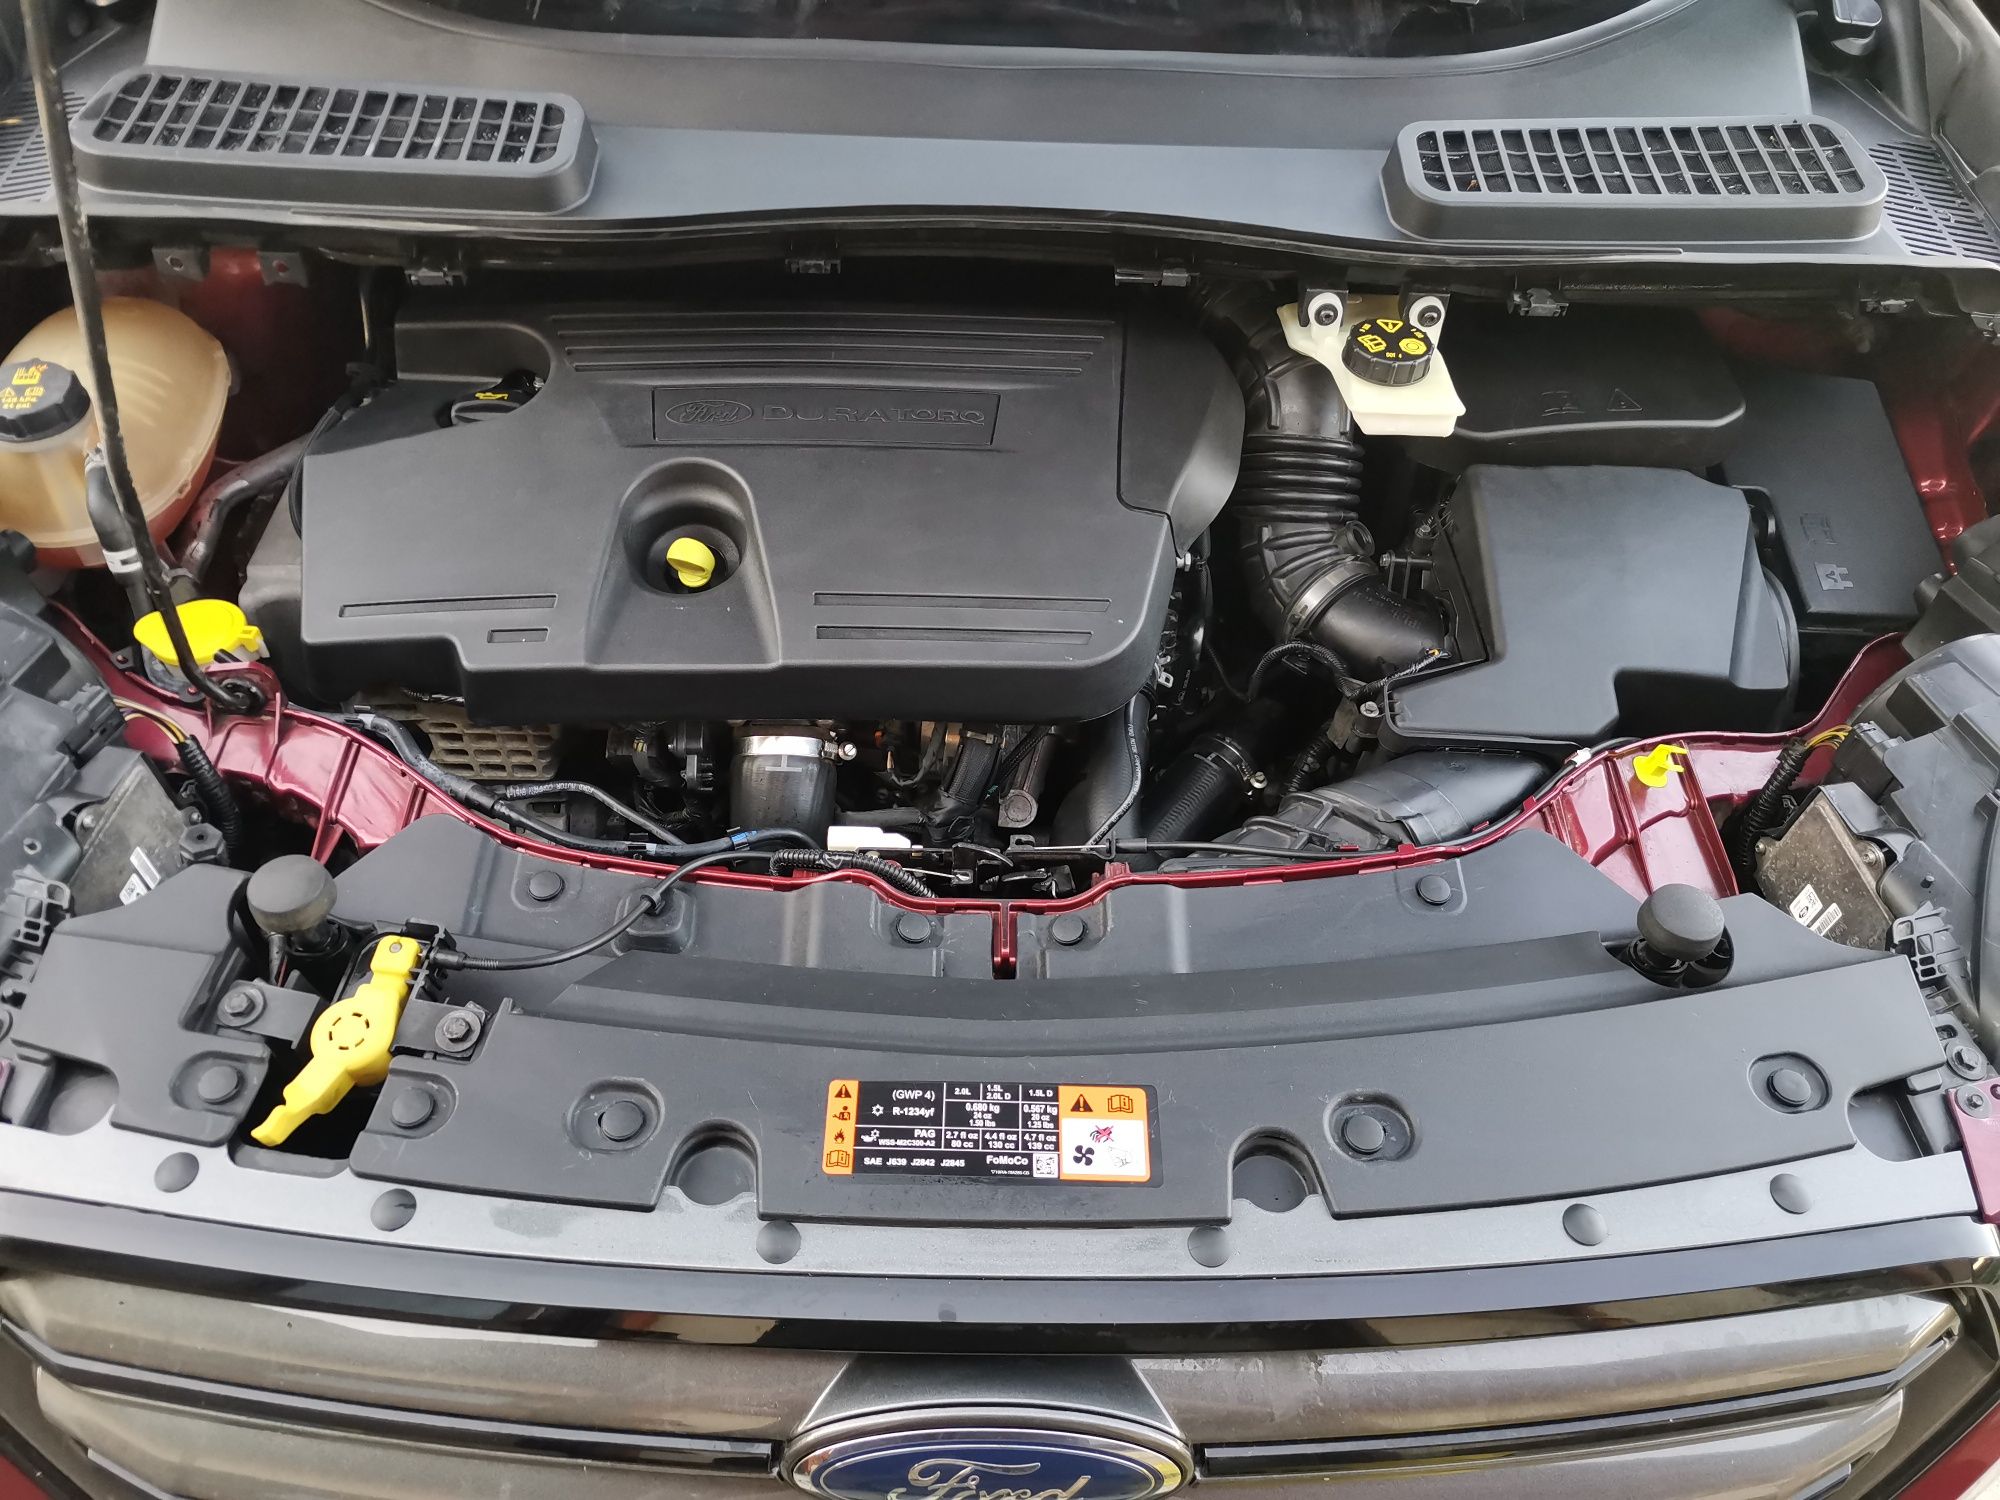 Detailing/Curățare interior auto- 250 lei, spalare motor